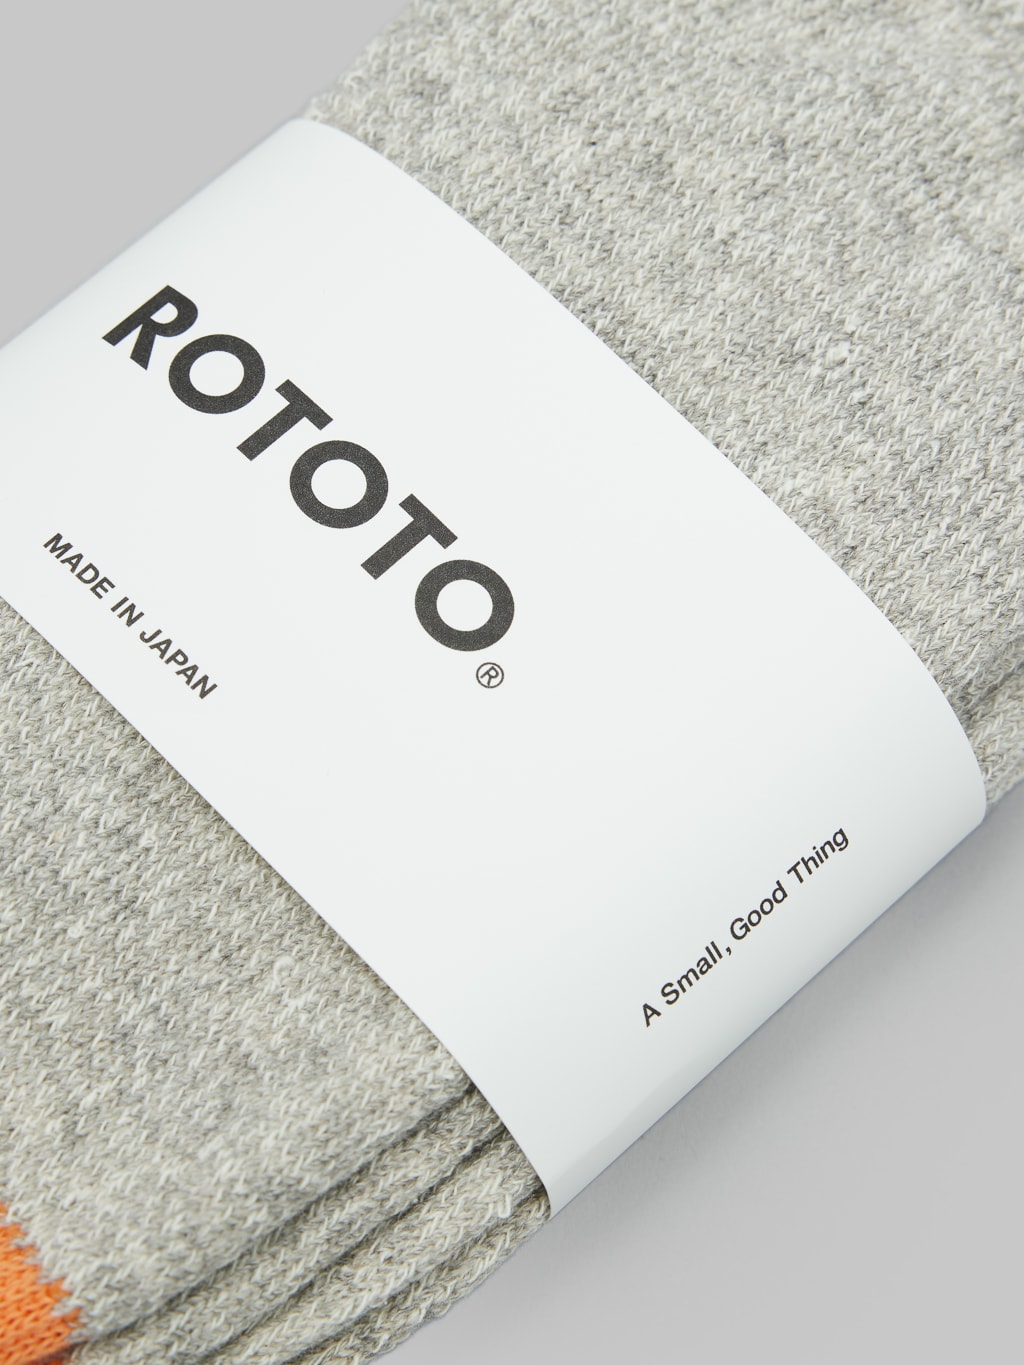 rototo double face crew socks silk cotton orange gray brand label